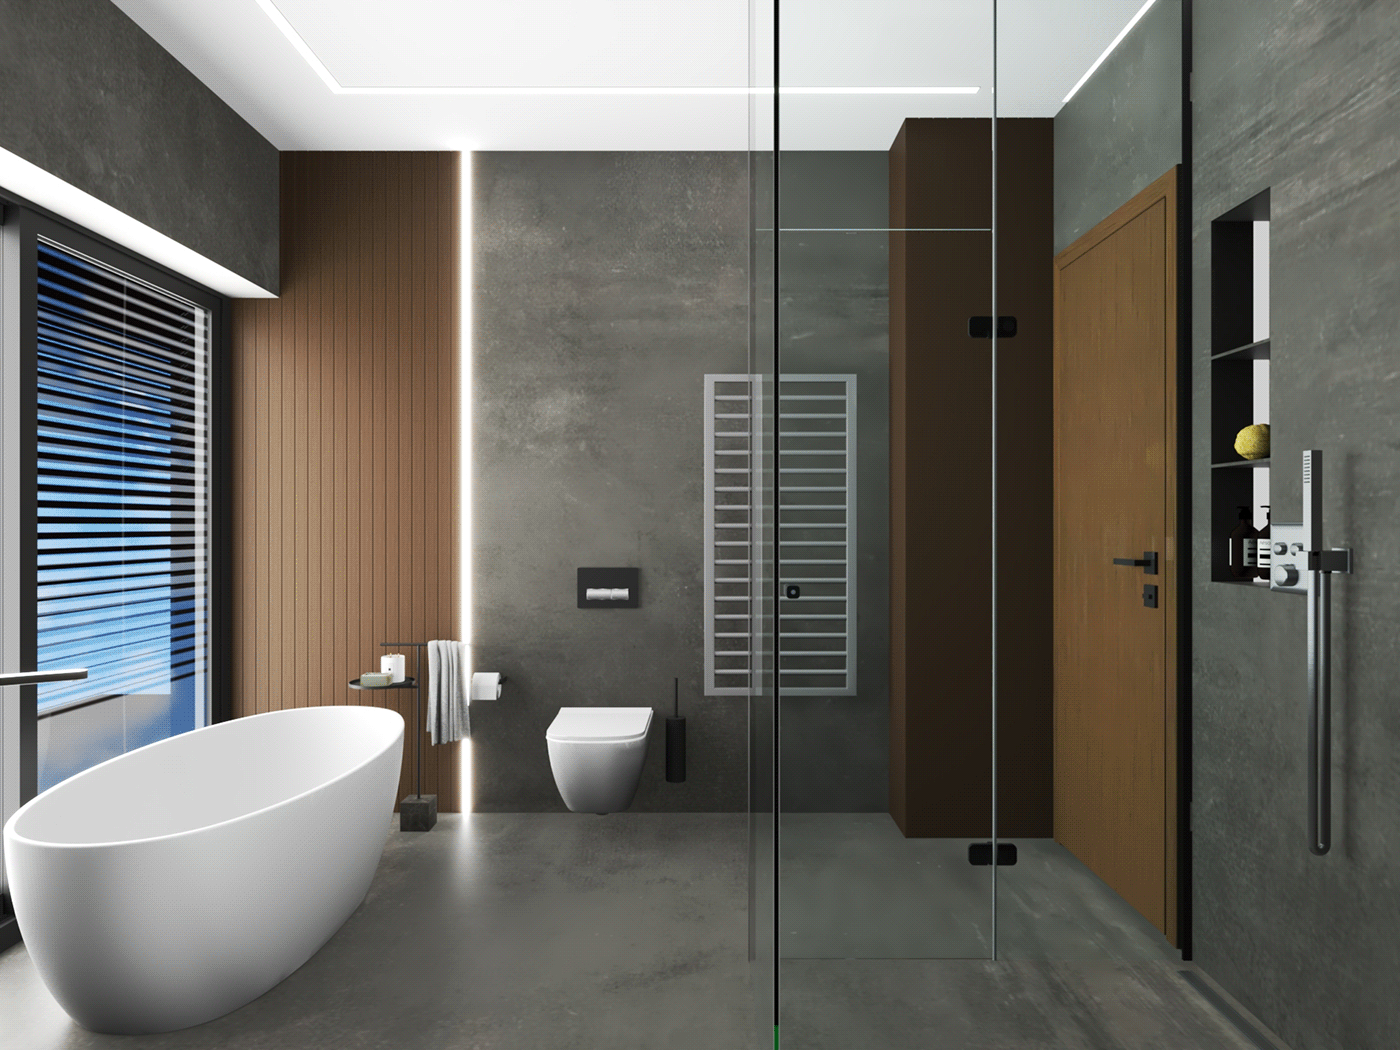 bathroom bedroom contemporary design Interior interior design  interiordesigner kitchen livingroom modern interior powderroom